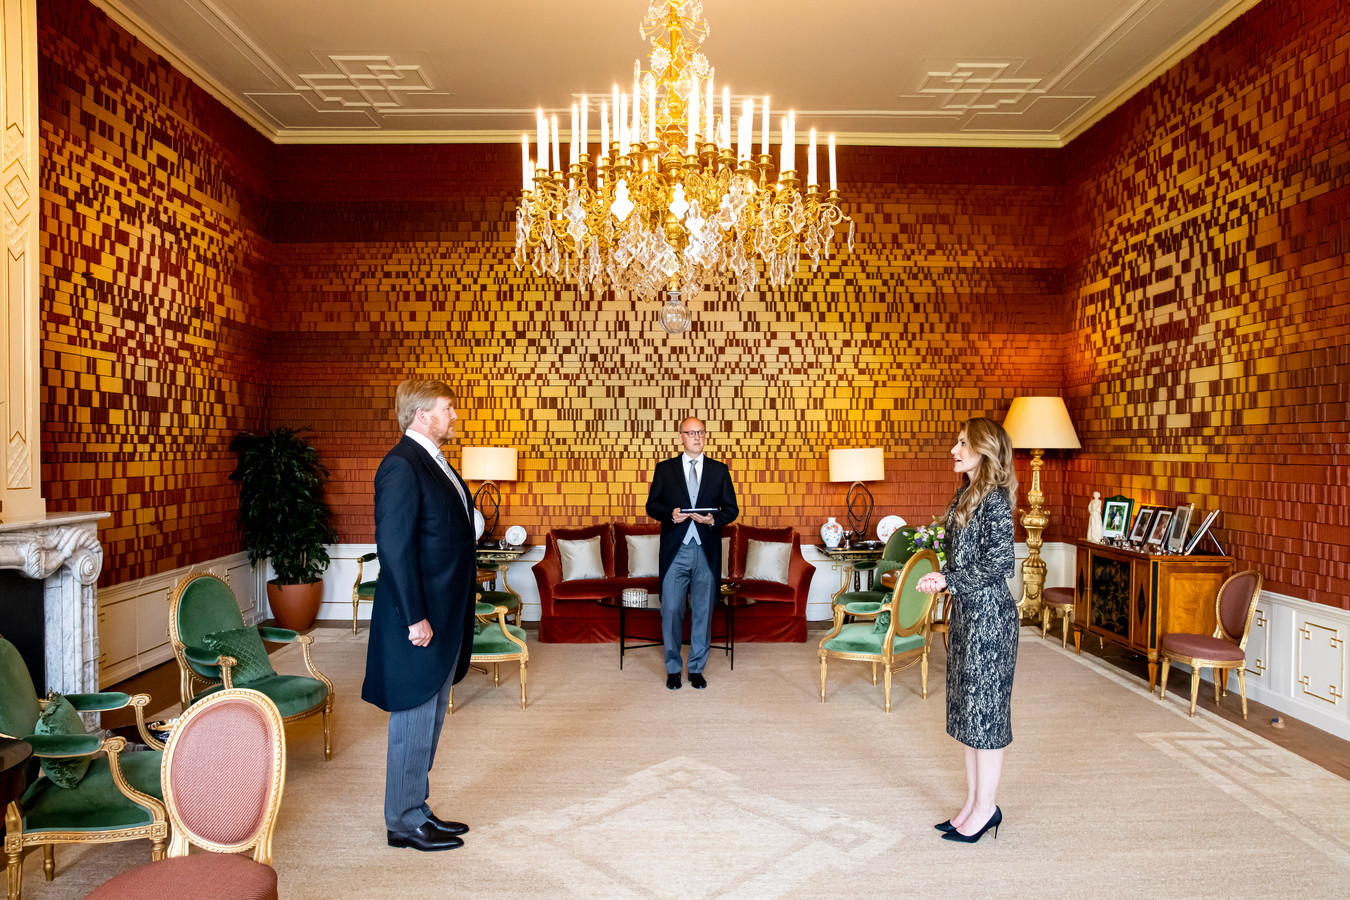 Dilan Yeşilgöz-Zegerius bij haar beëdiging voor koning Willem-Alexander als staatssecretaris van Klimaat in Paleis Huis ten Bosch.